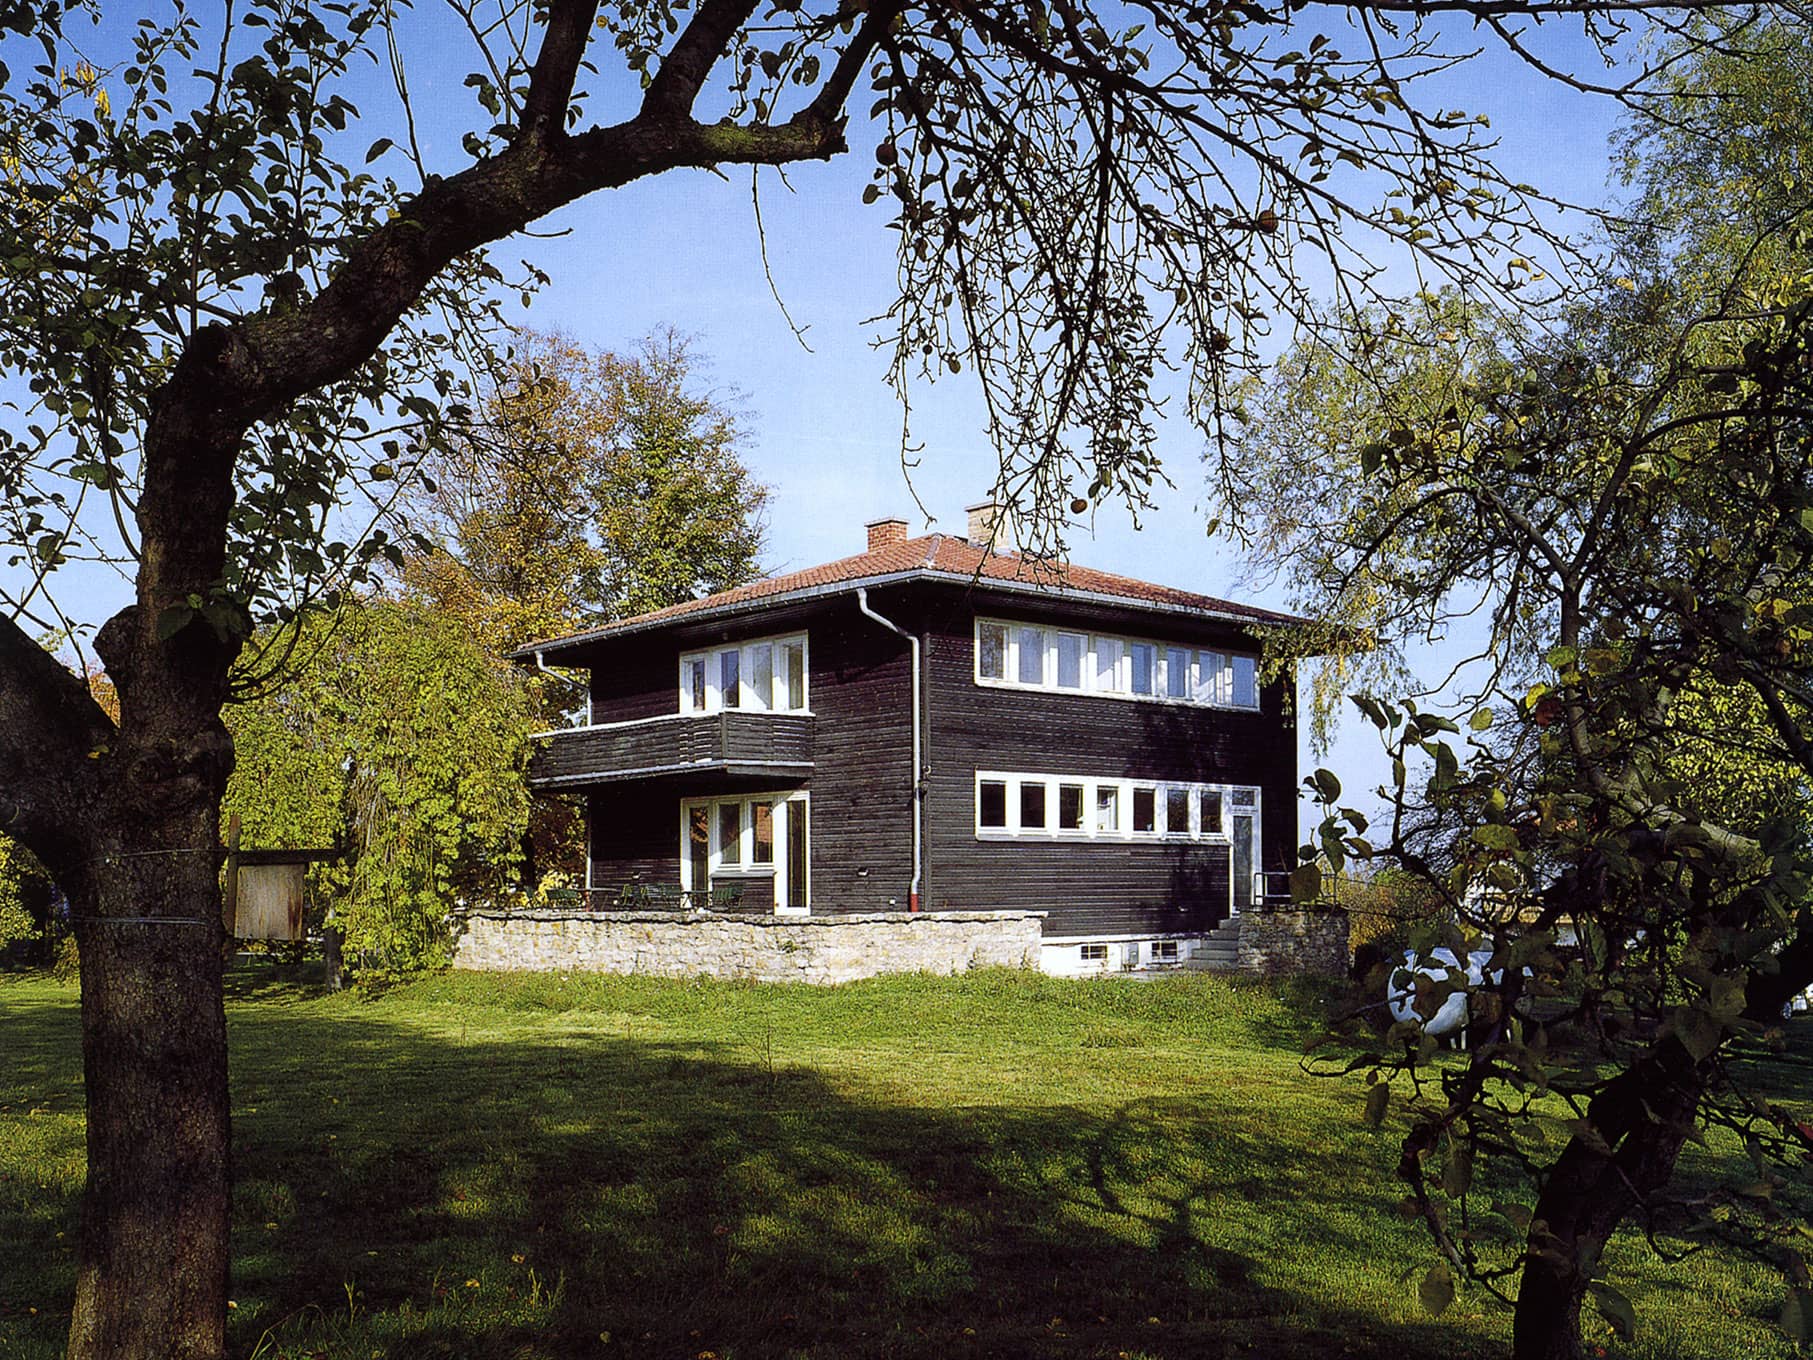 Neufert Haus, Weimar vom Garten gesehen